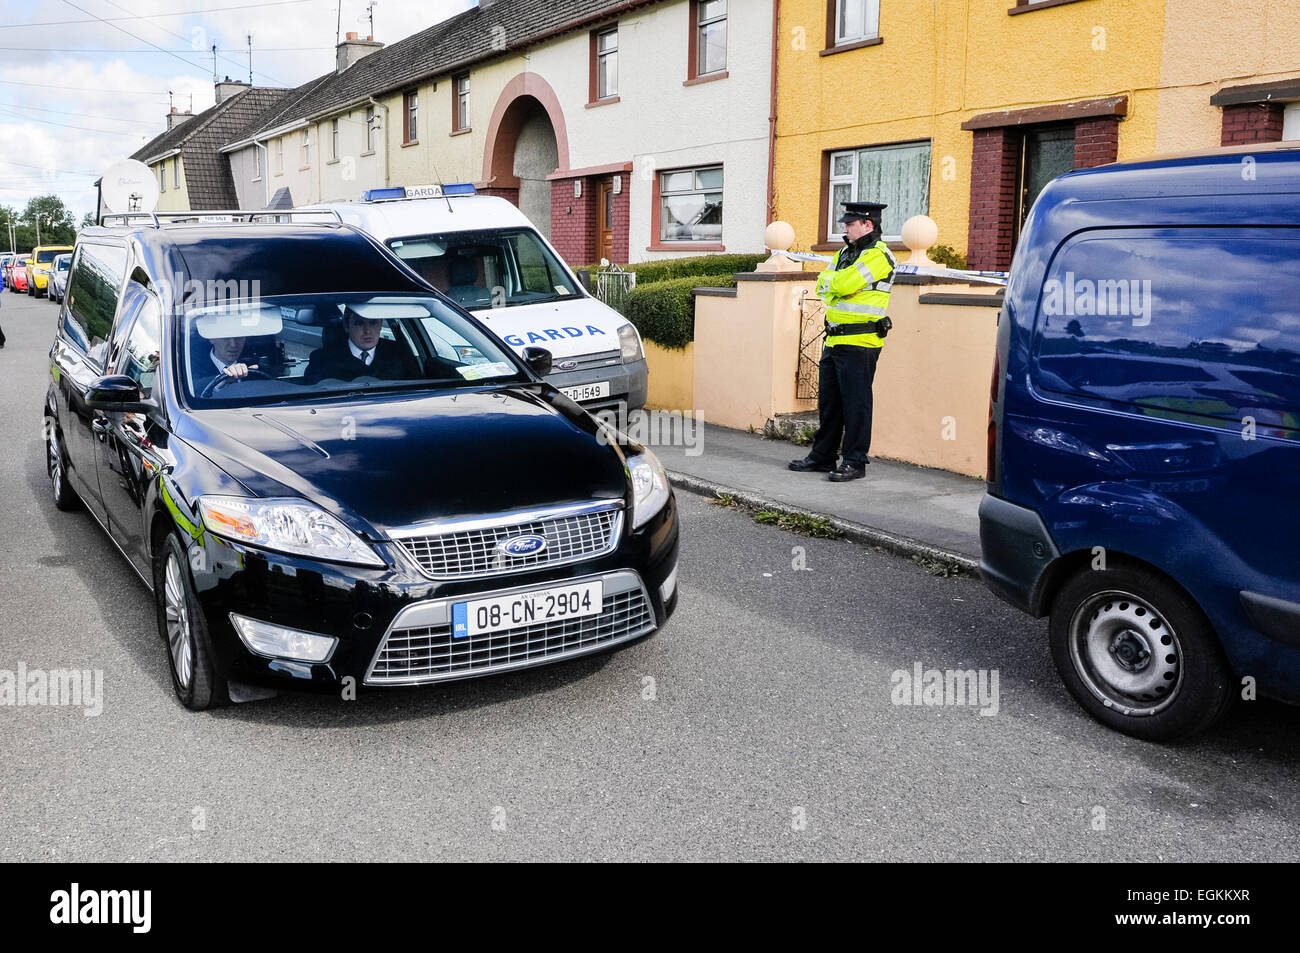 Bailieborough, comté de Cavan, République d'Irlande, 6 septembre 2013 - un corbillard s'arrête à une maison étant gardé par un officier Garda Siochana après qu'un corps avait été trouvé. Banque D'Images